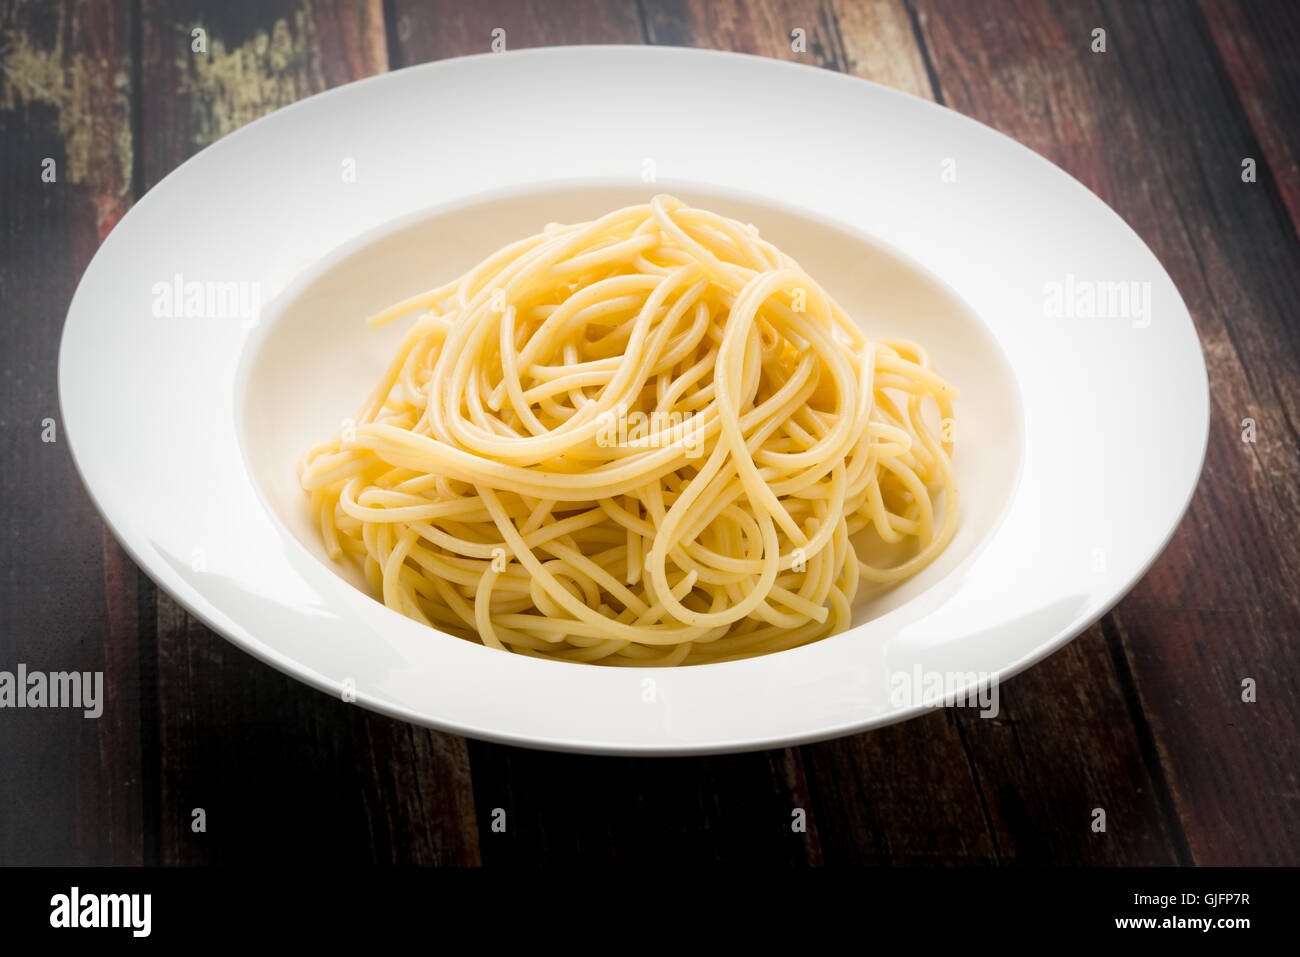 Los espaguetis en un recipiente blanco sobre una superficie de madera Foto de stock